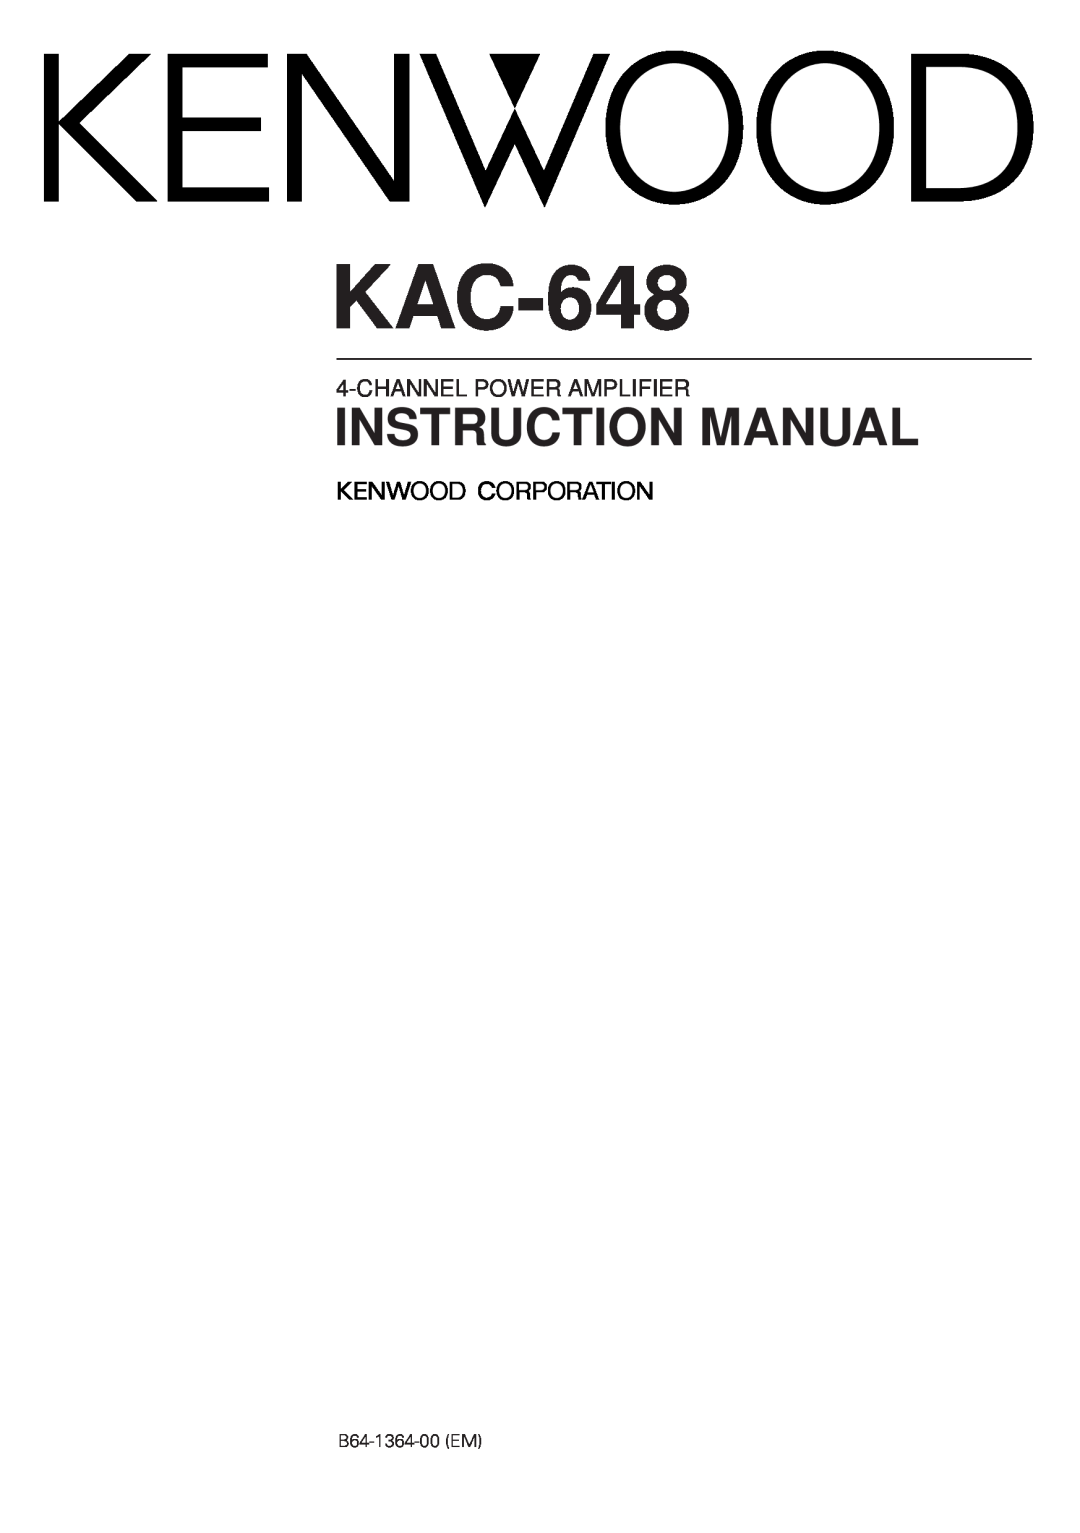 Kenwood KAC-648 instruction manual Channelpower Amplifier, B64-1364-00EM 